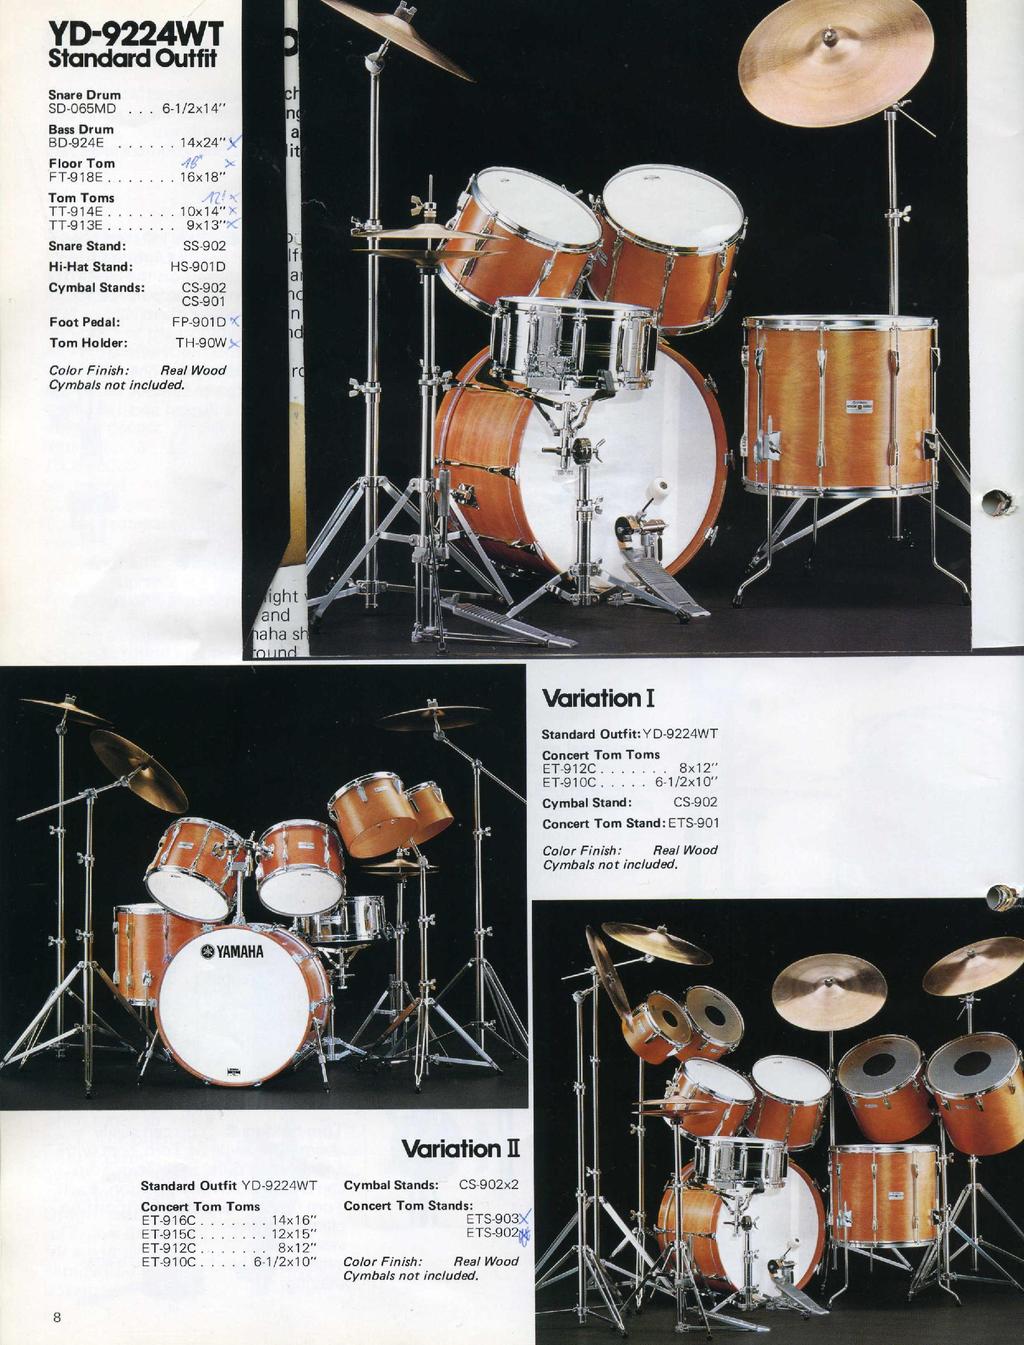 Variationen aus dem YAMAHA-Katalog von 1979, so wie diese von mir ebenfalls zum Einsatz kamen.